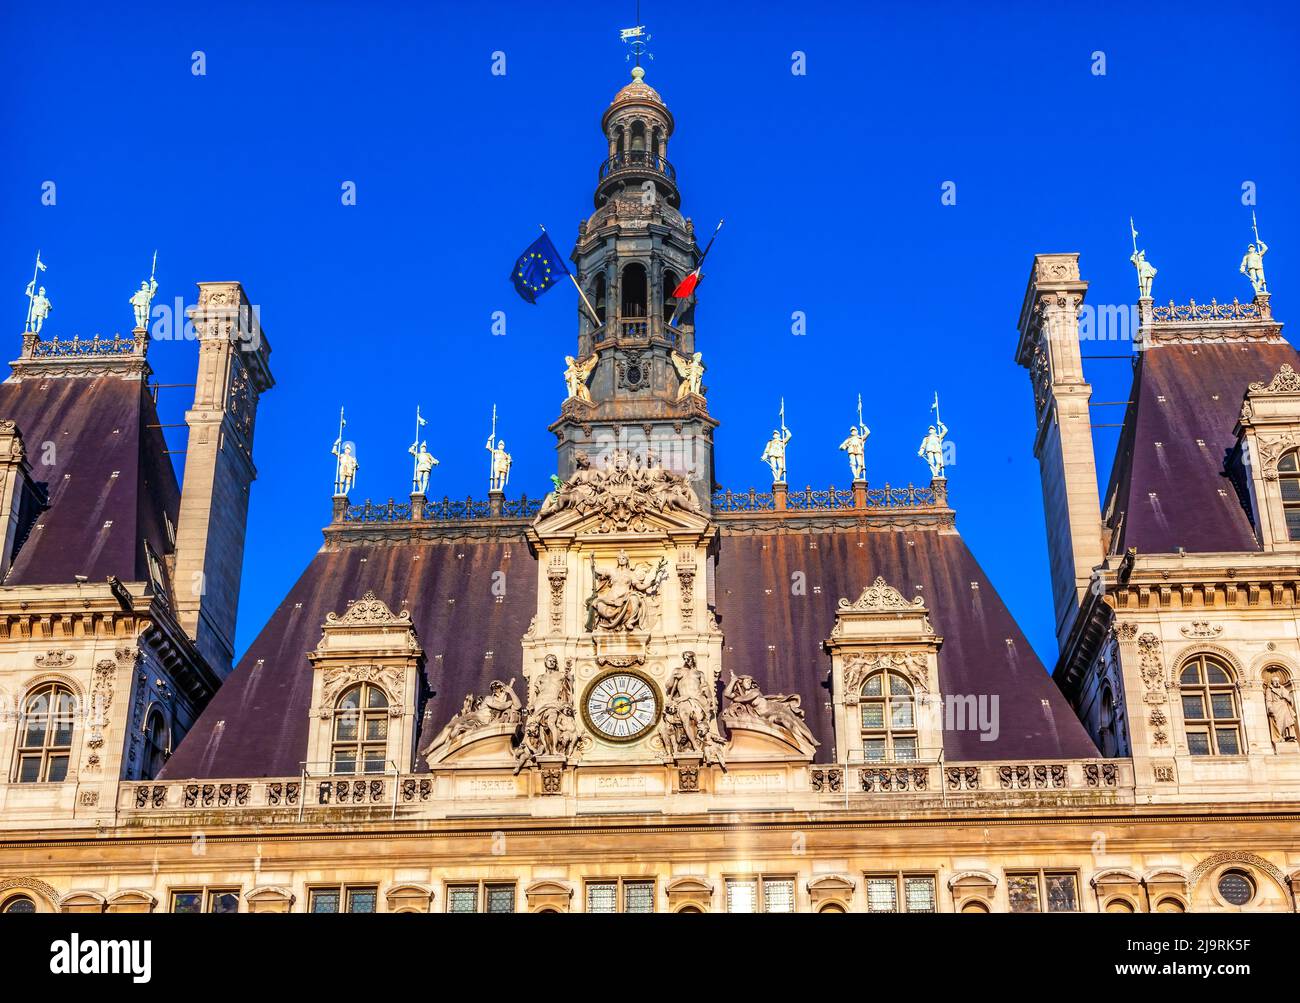 Hôtel de ville, Paris, France. Construit 1500 puis reconstruit dans les années 1800 Banque D'Images